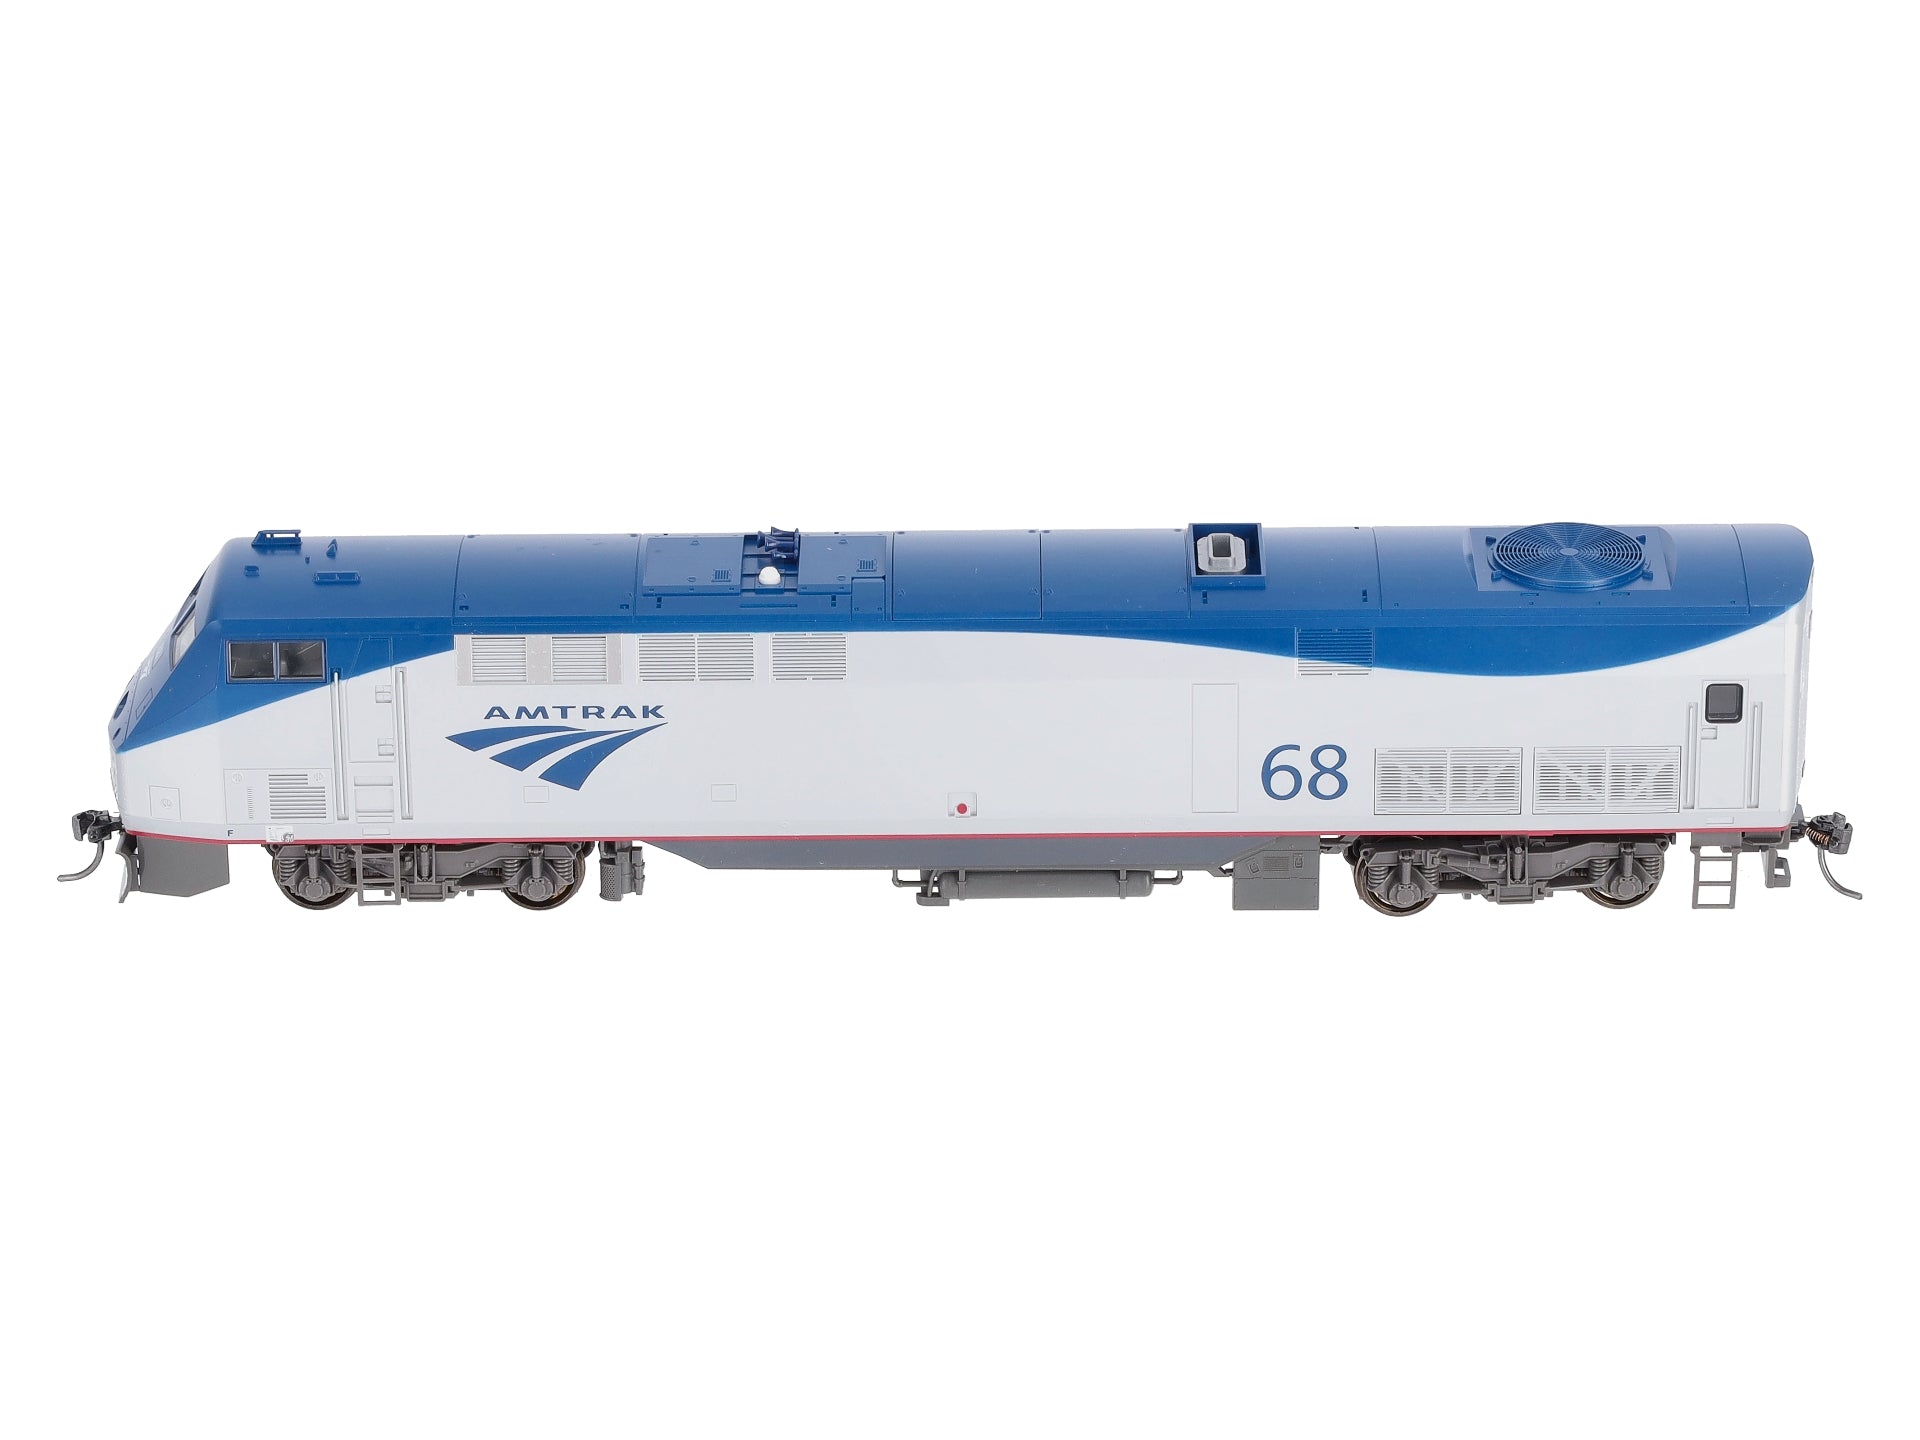 Kato HO Scale ~ Amtrak Phase V Late ~ GE P42 Genesis #17 ~ 37-6117